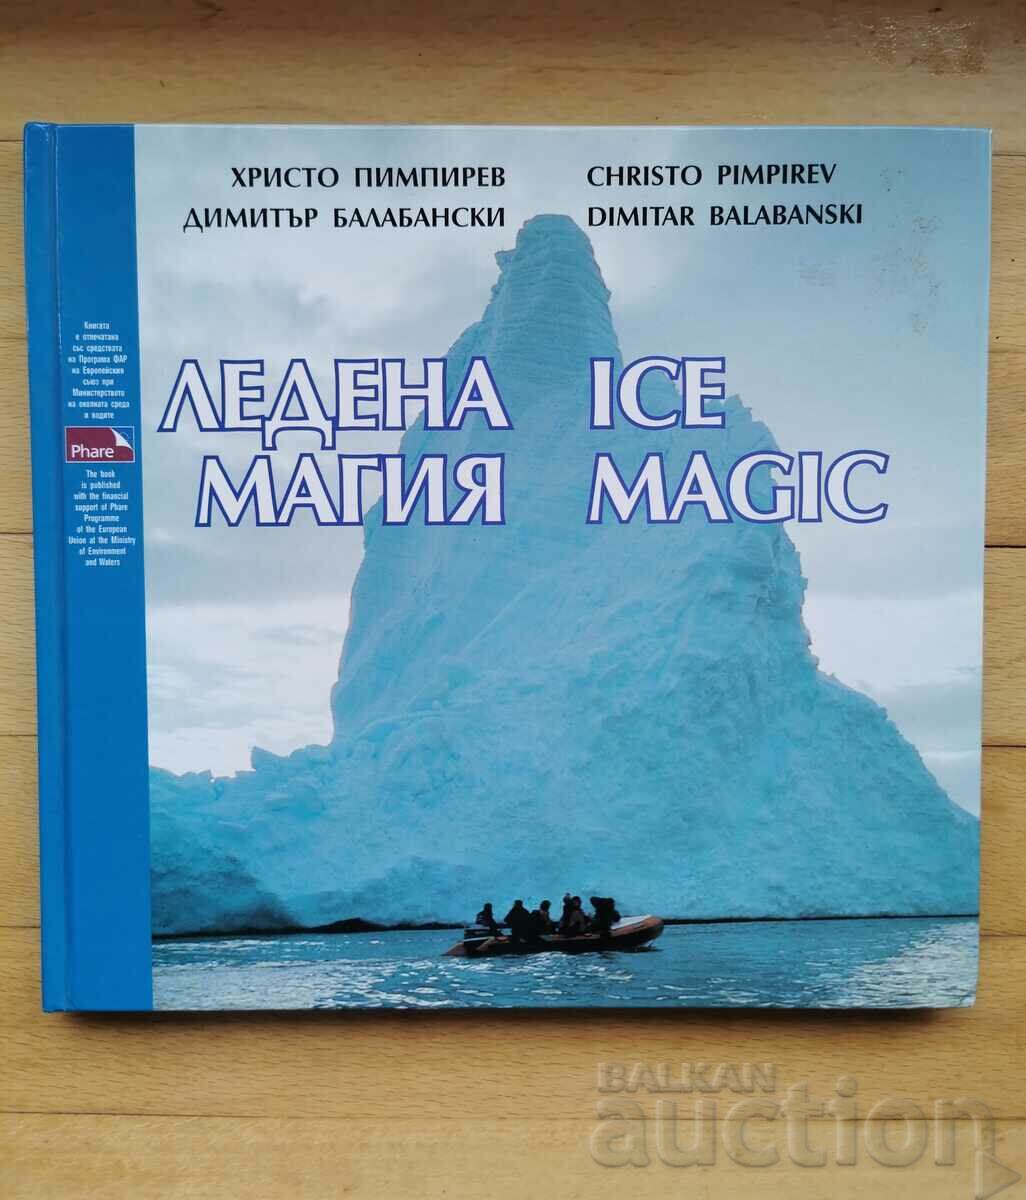 Magia de gheață - o carte despre stația din Antarctica bulgară